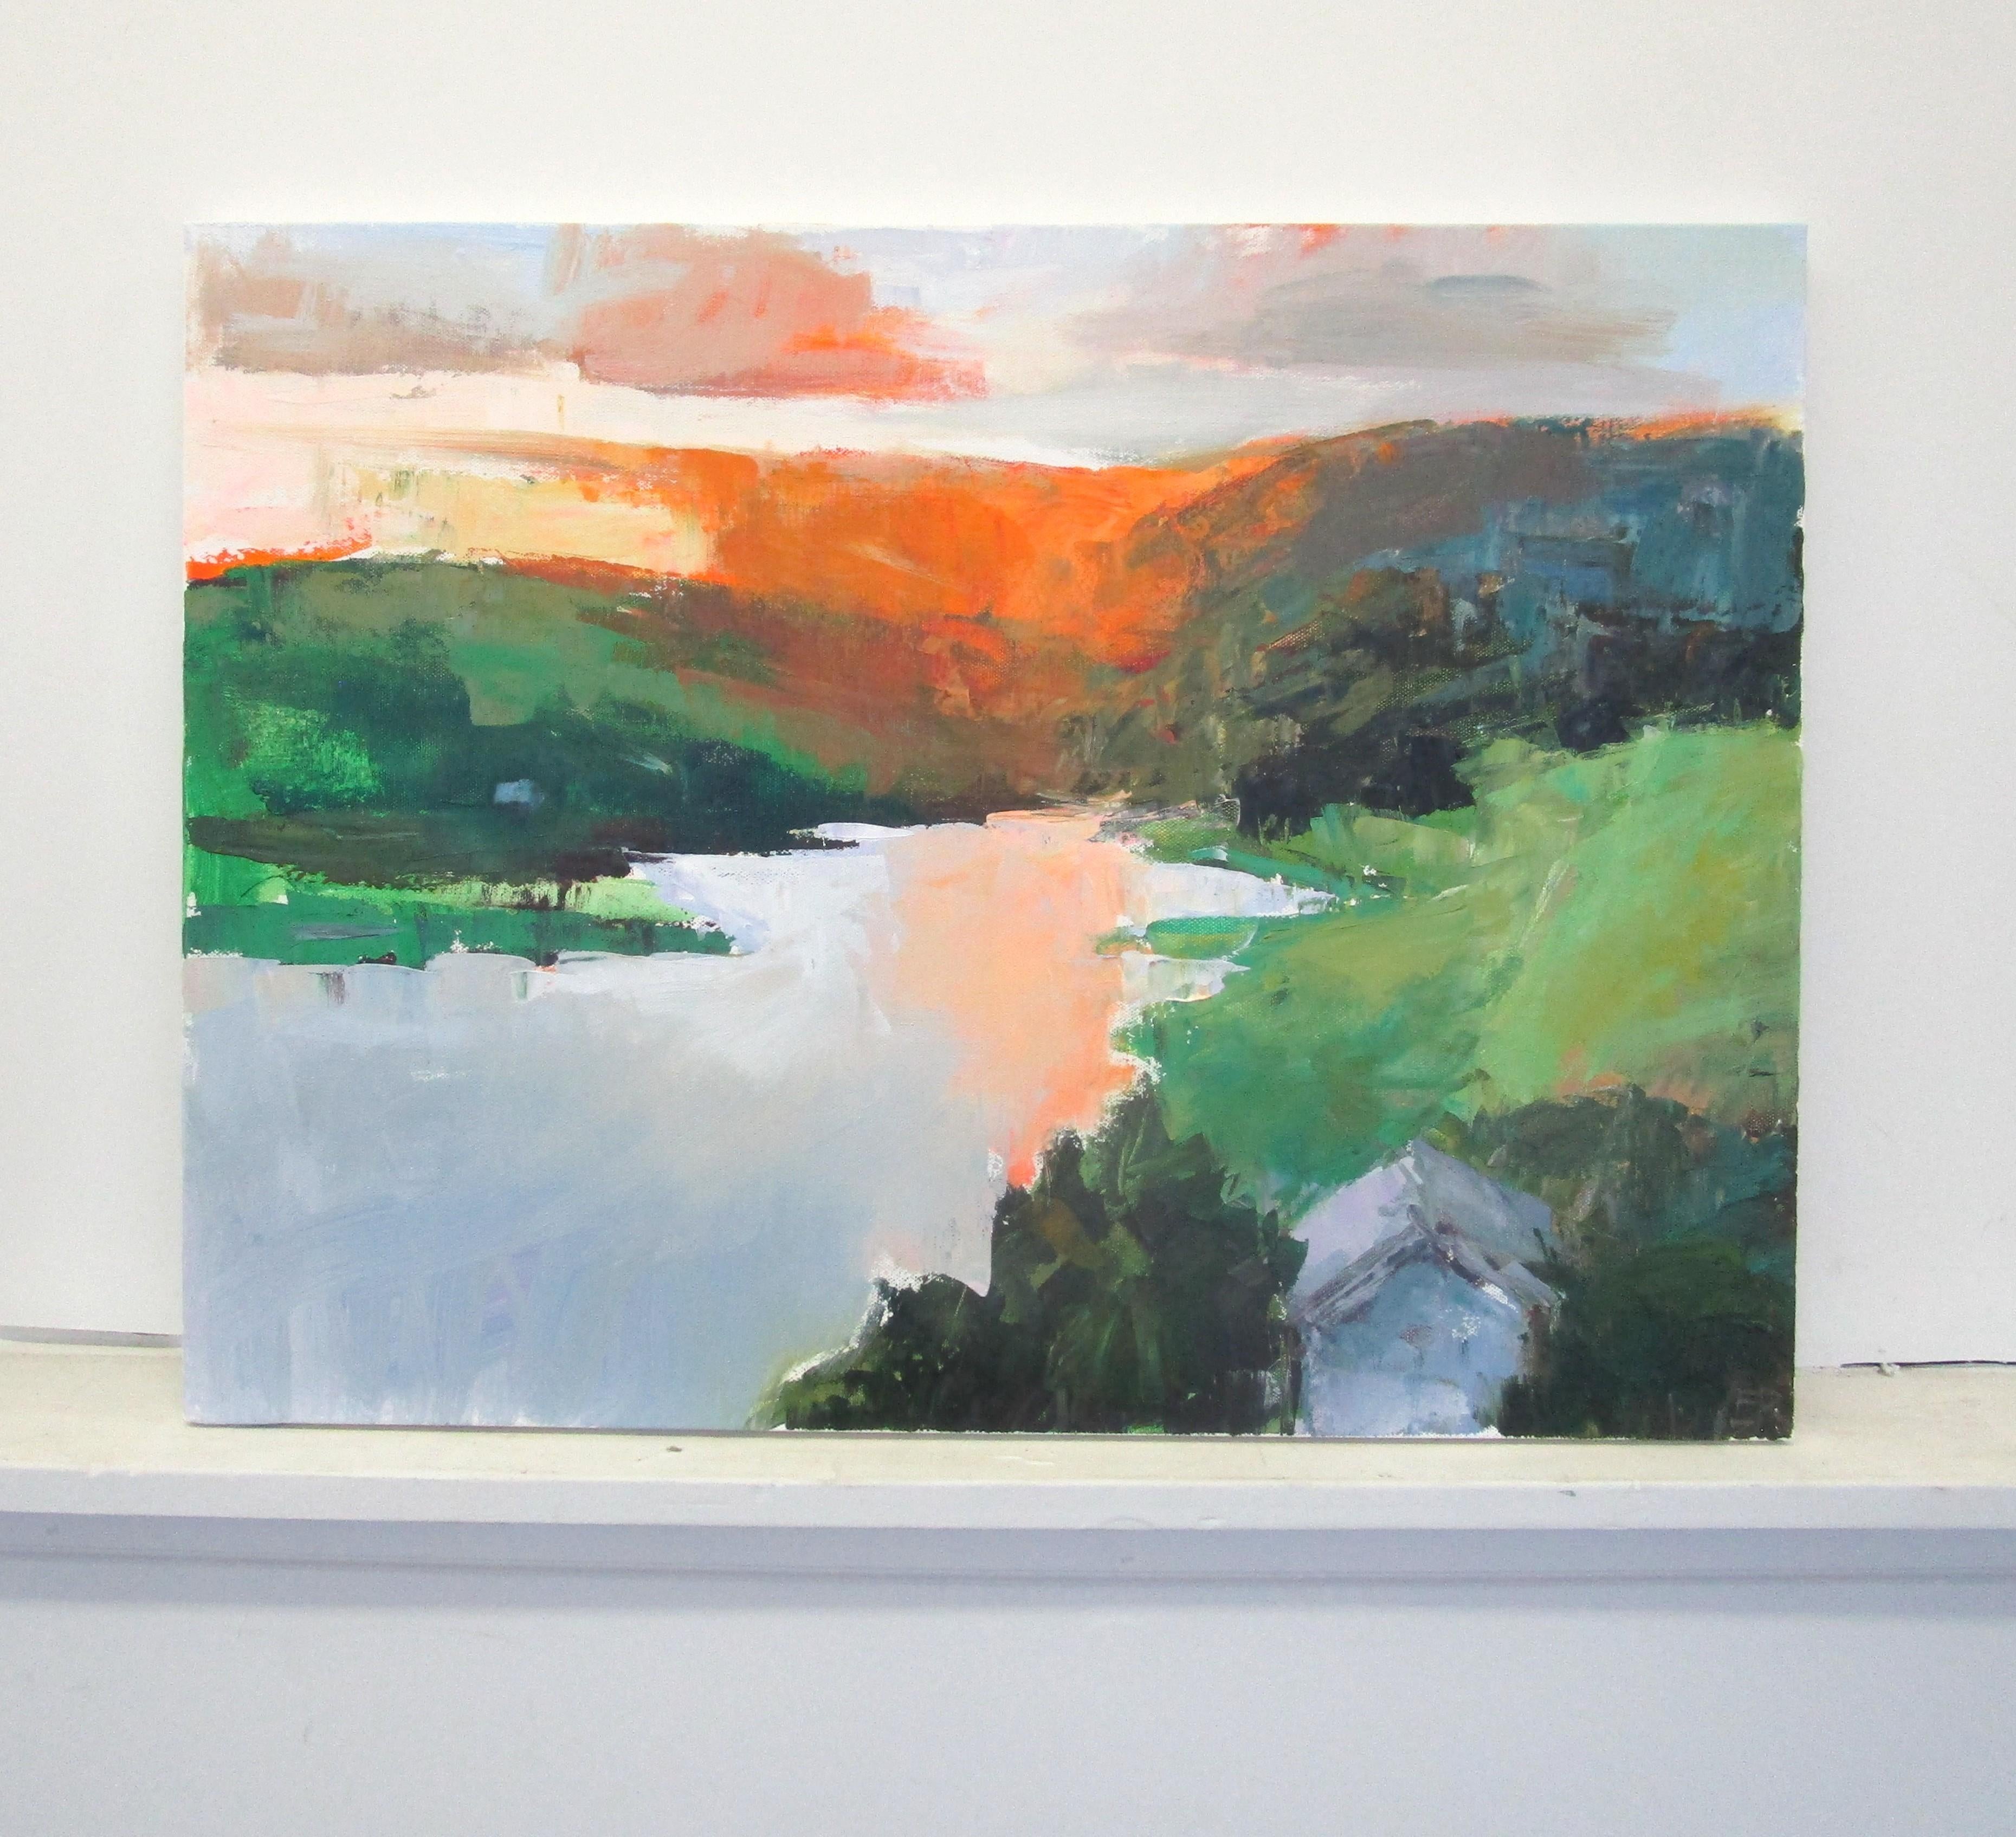 <p>Commentaires de l'artiste<br>L'artiste Janet Dyer représente un soleil expressionniste se couchant derrière des montagnes au bord d'un lac. Elle capture la chaude lueur orange des derniers instants de sa descente. 